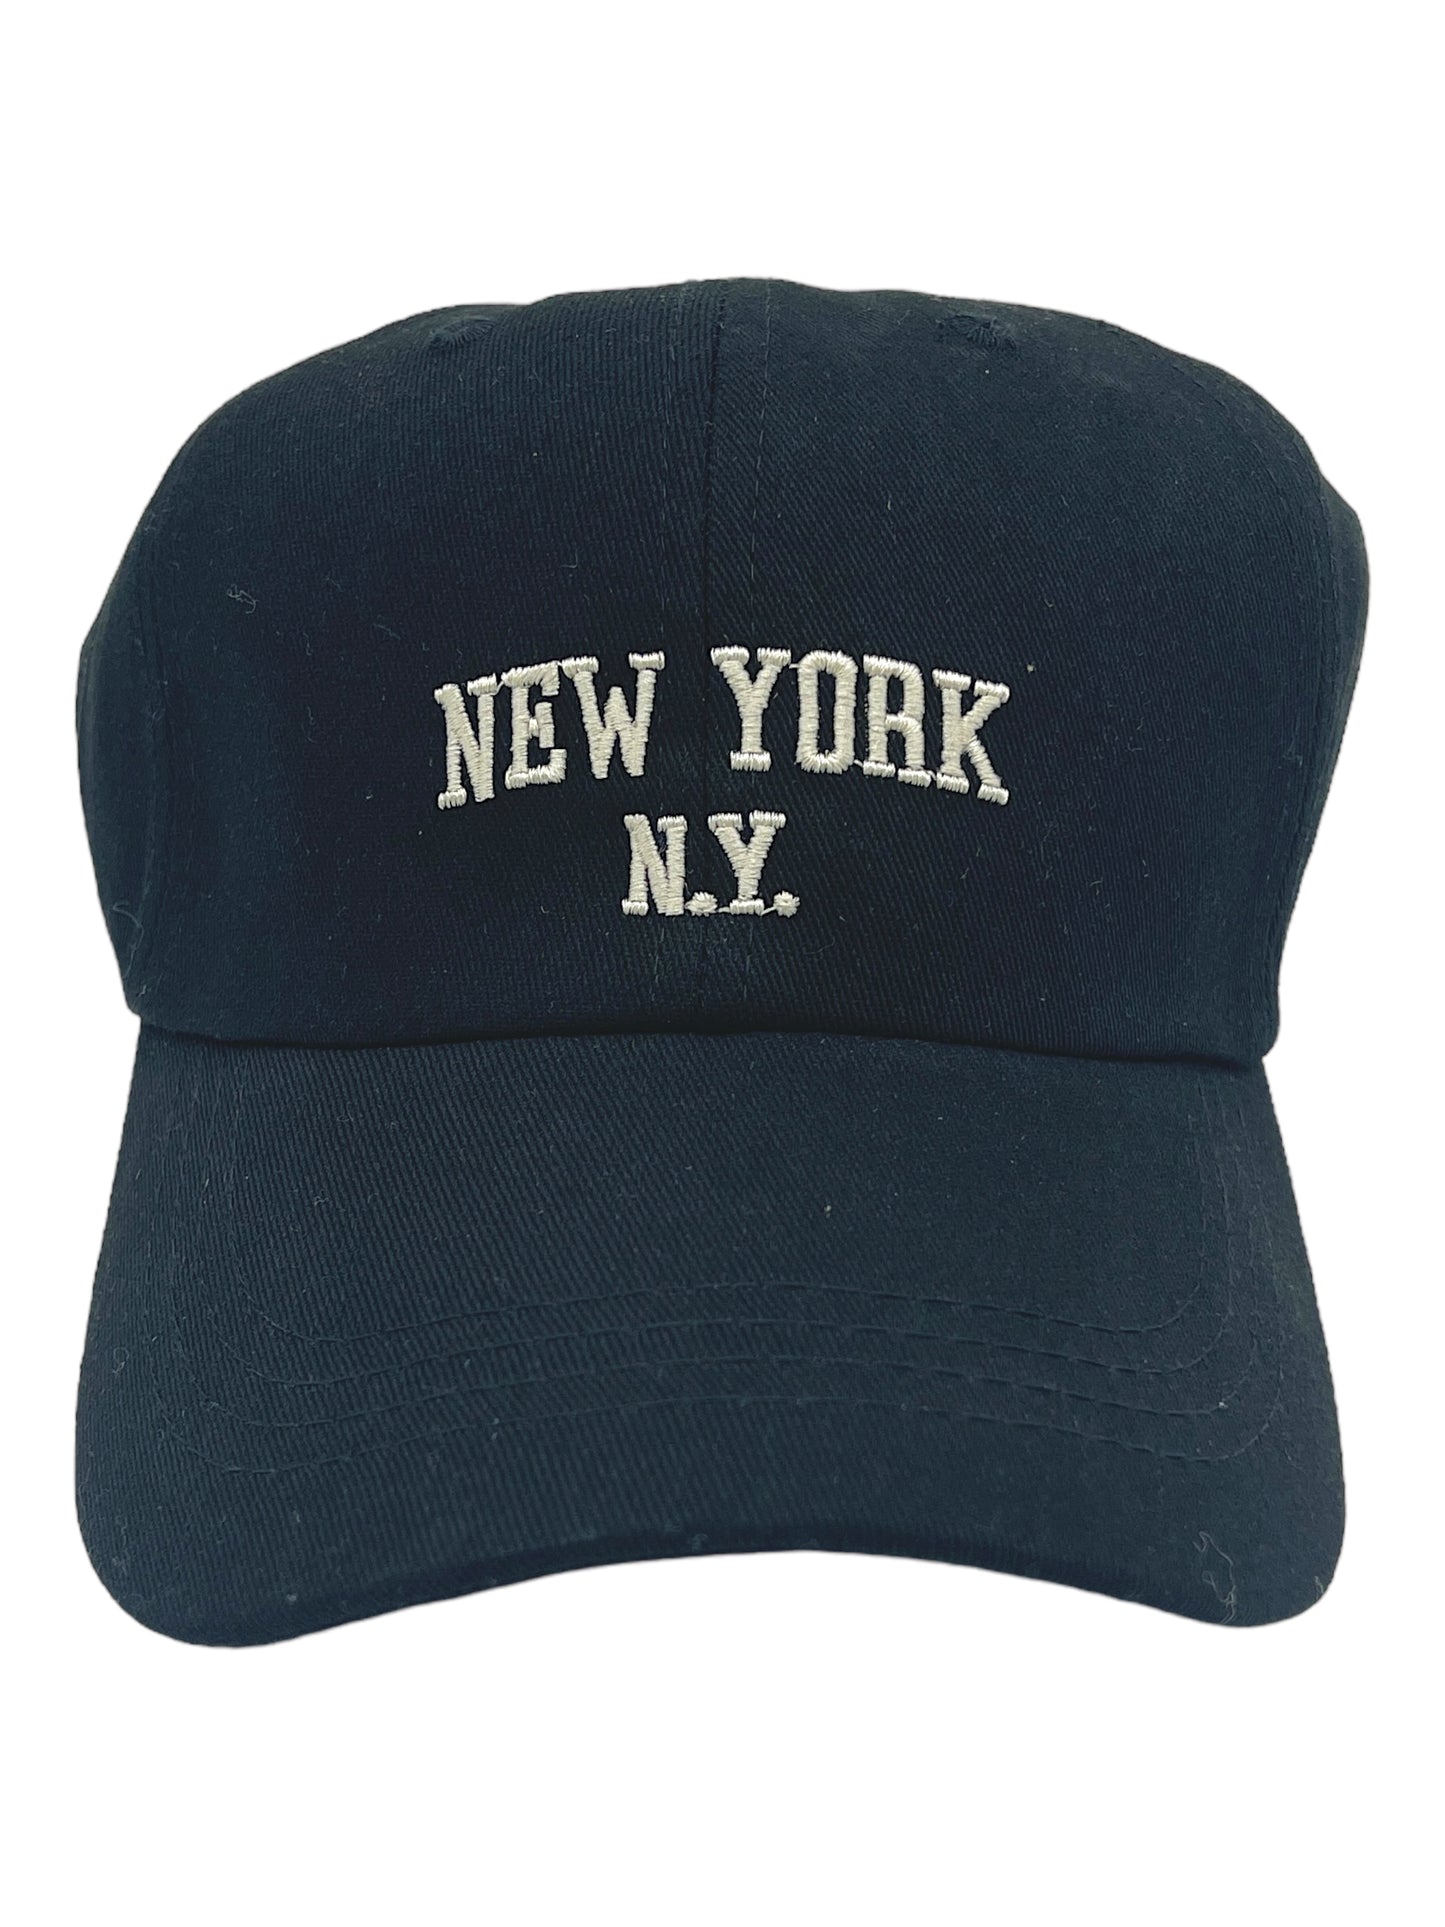 “NEW YORK, N.Y.” Adjustable Dad Cap